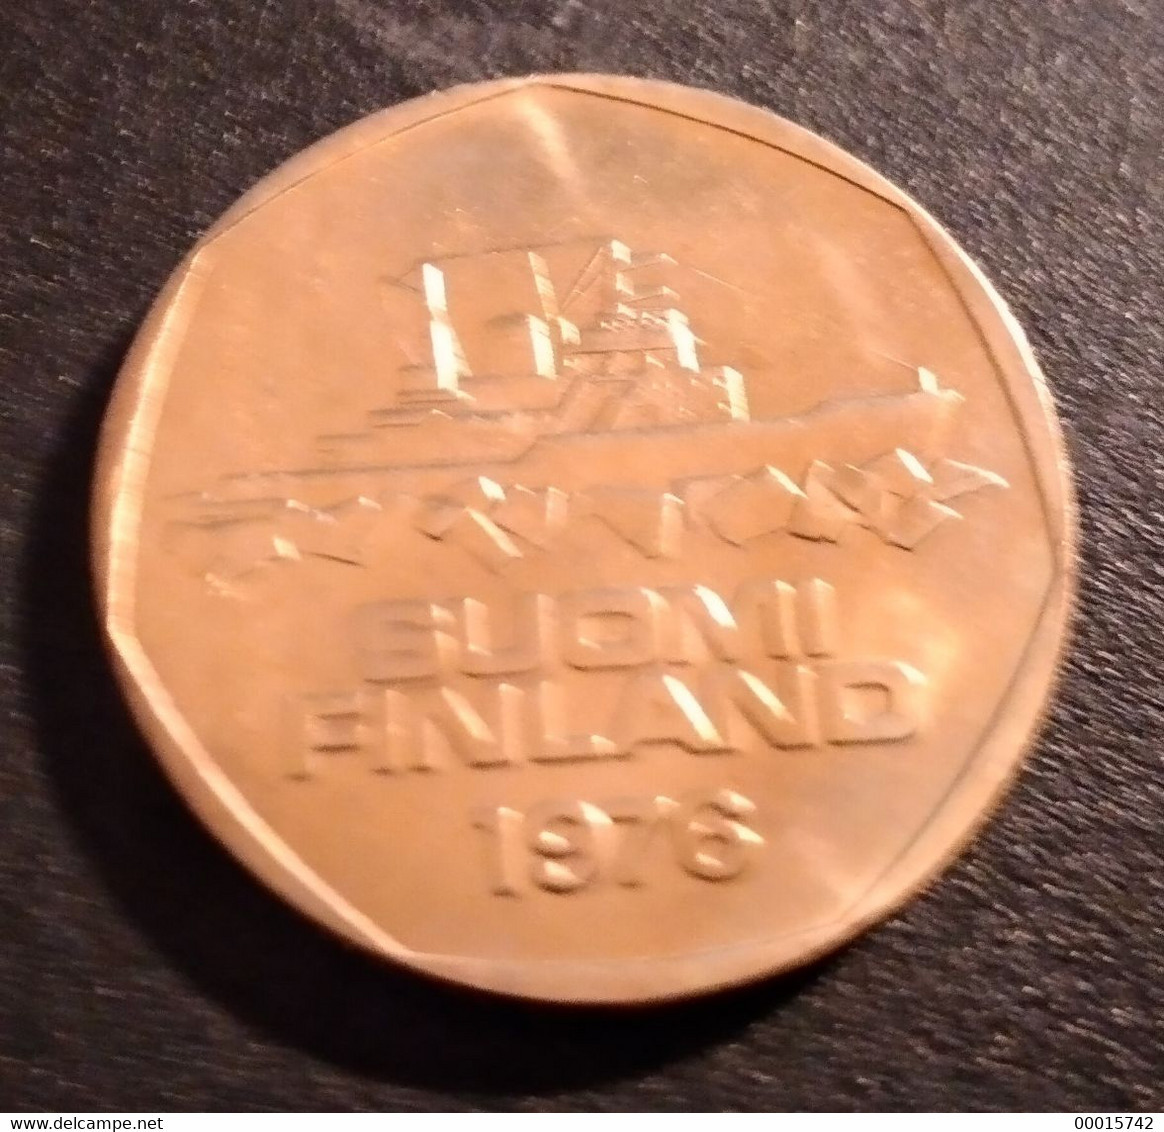 FINLAND 5 MK 1976  UNC - Finlande